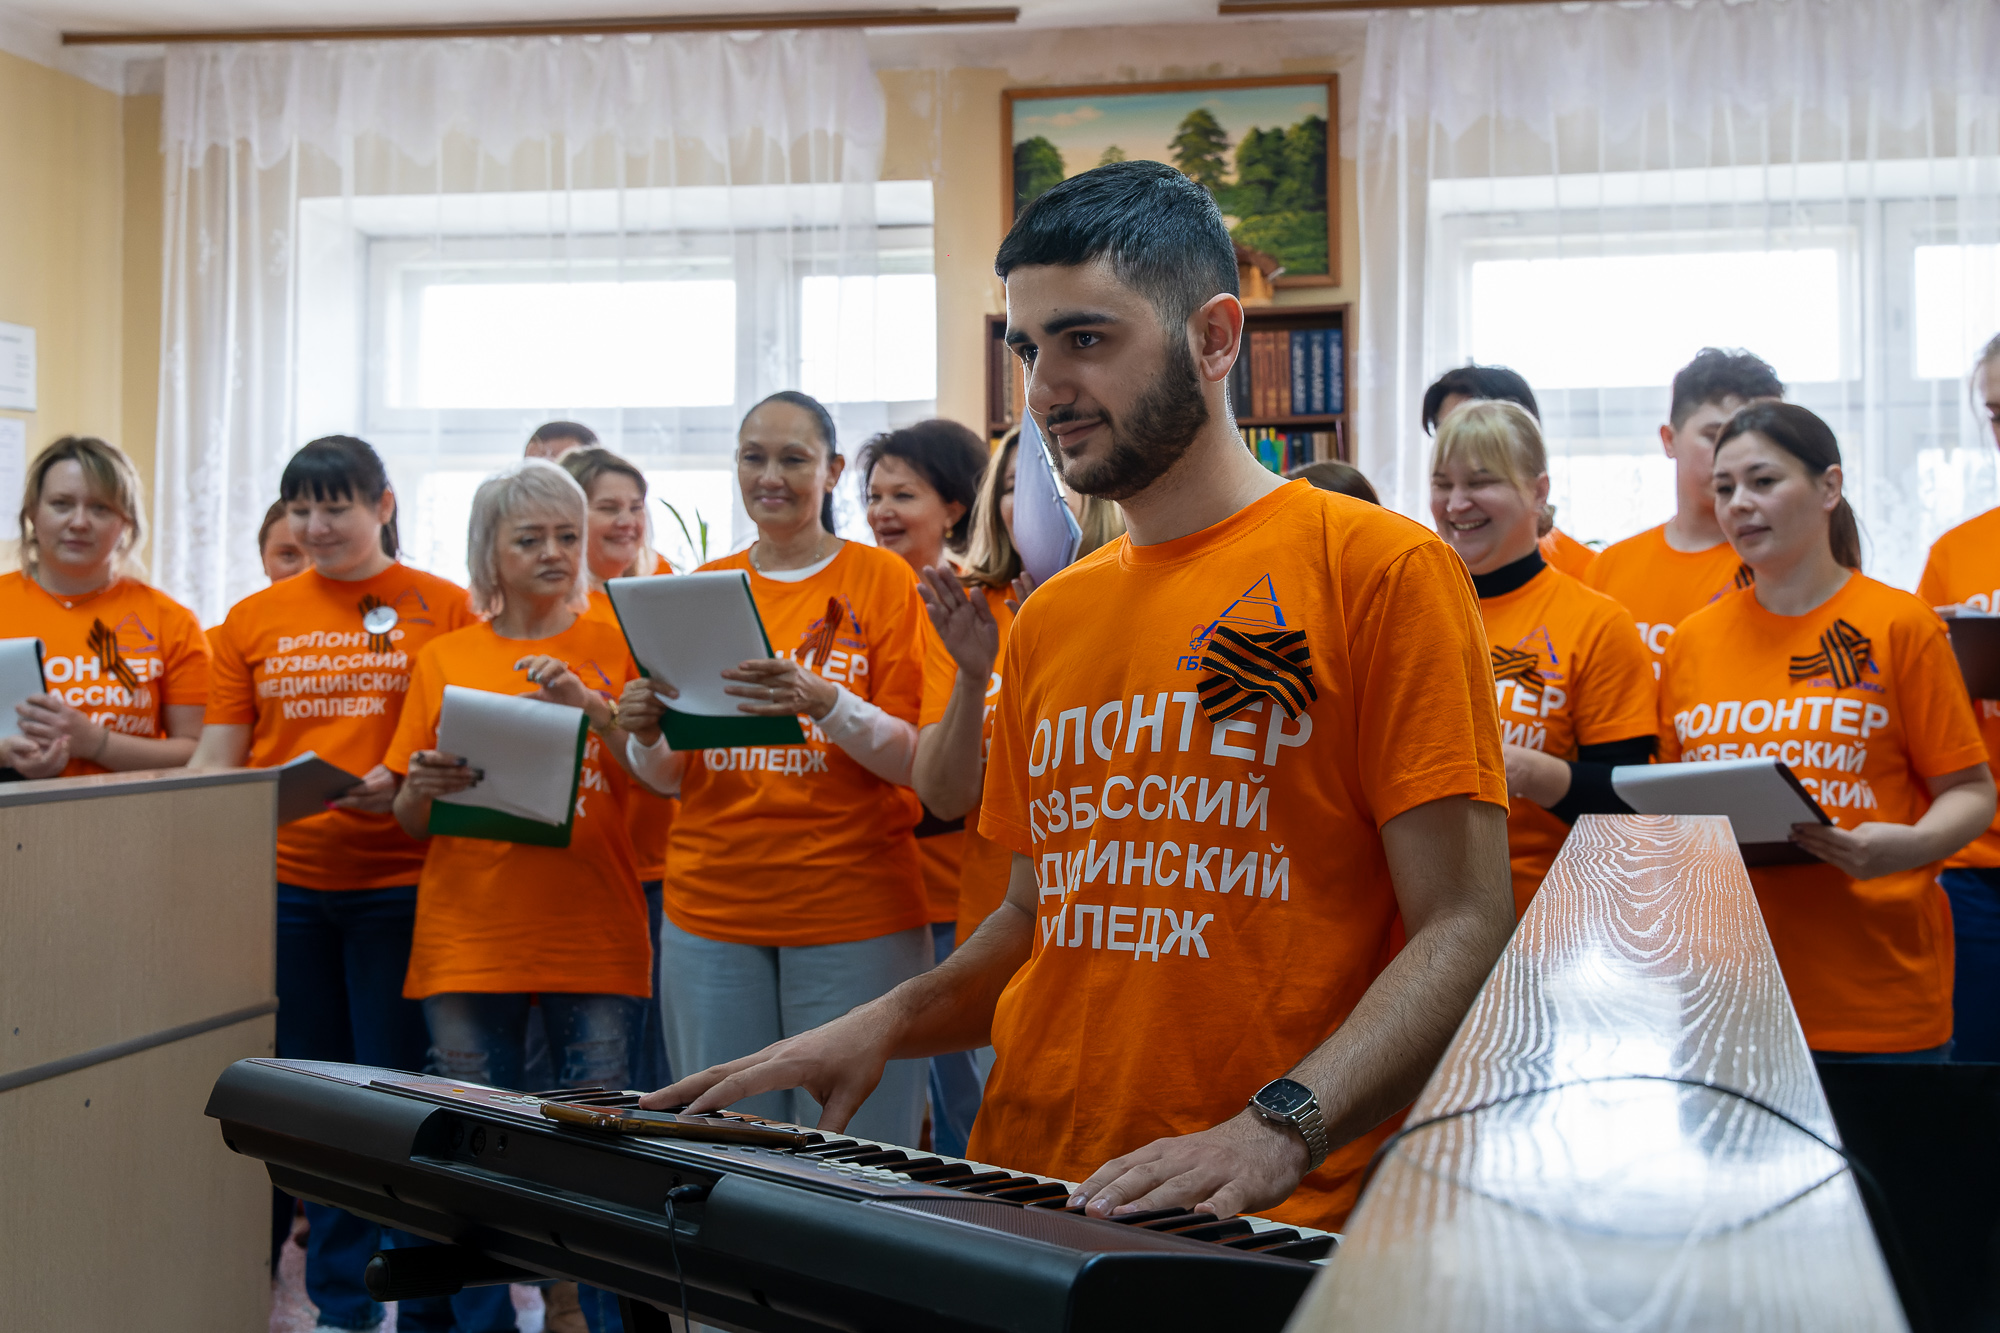 Кузбасская молодёжь чтит традиционные ценности Отечества